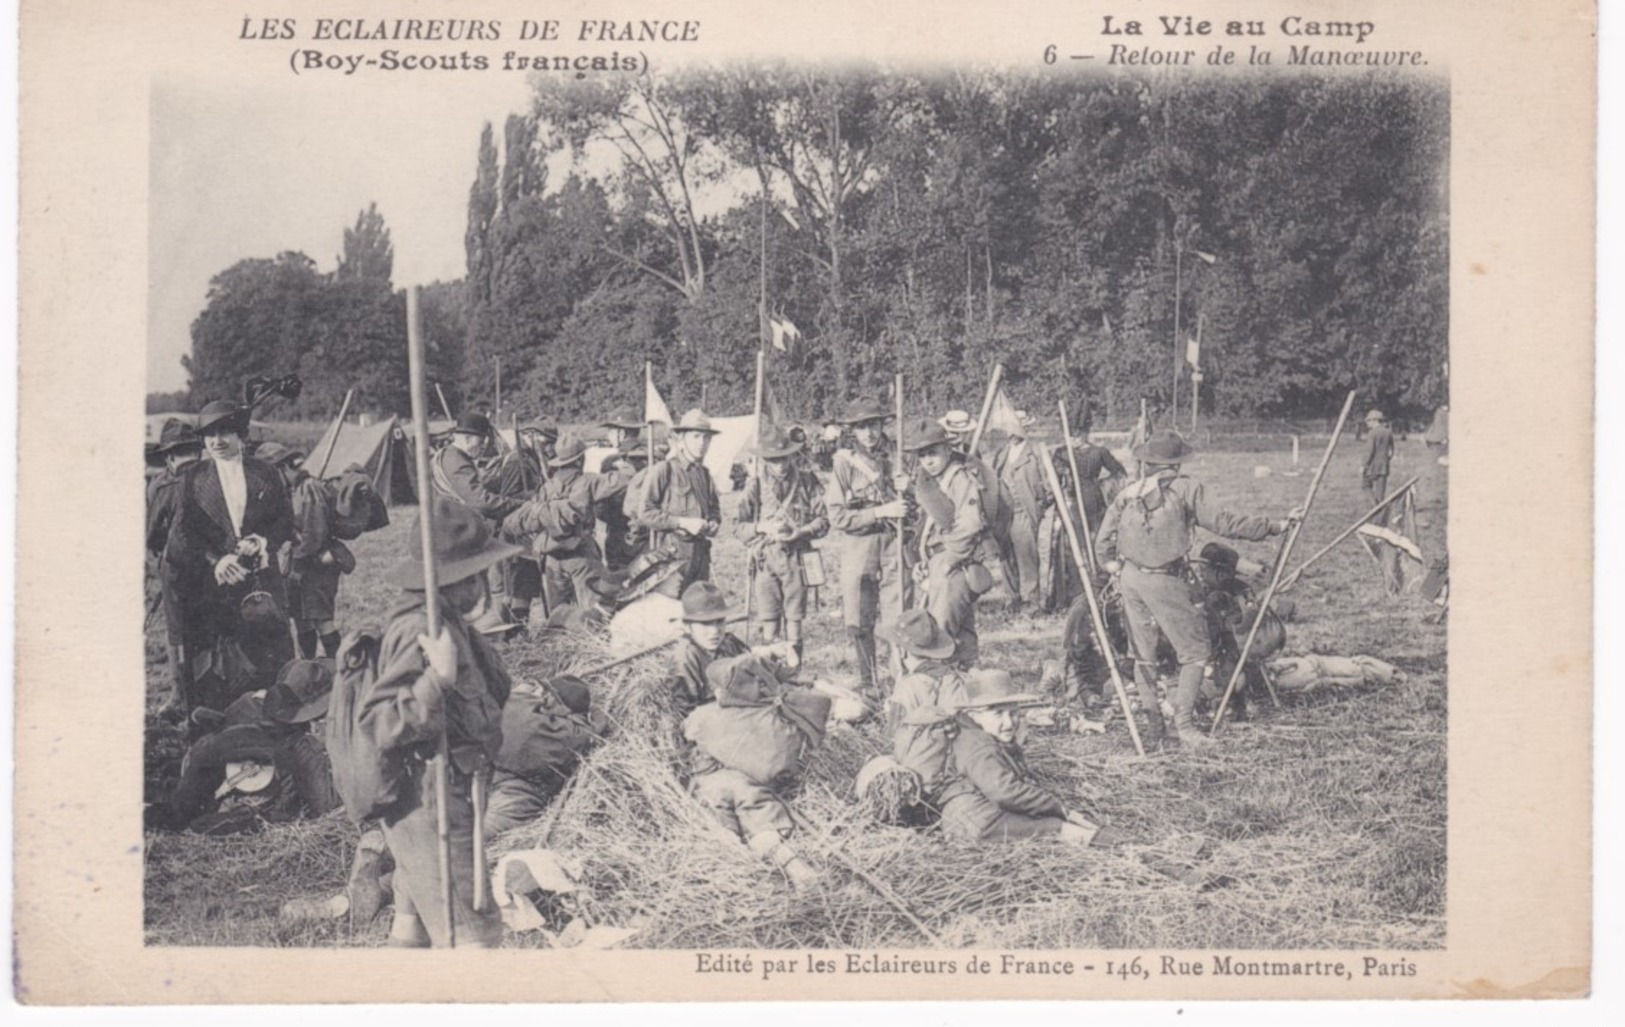 Les Eclaireurs De France - Boy-Scouts Français - La Vie Au Camp - Retour De La Manoeuvre - Ed. Eclaireurs, Paris - Pfadfinder-Bewegung